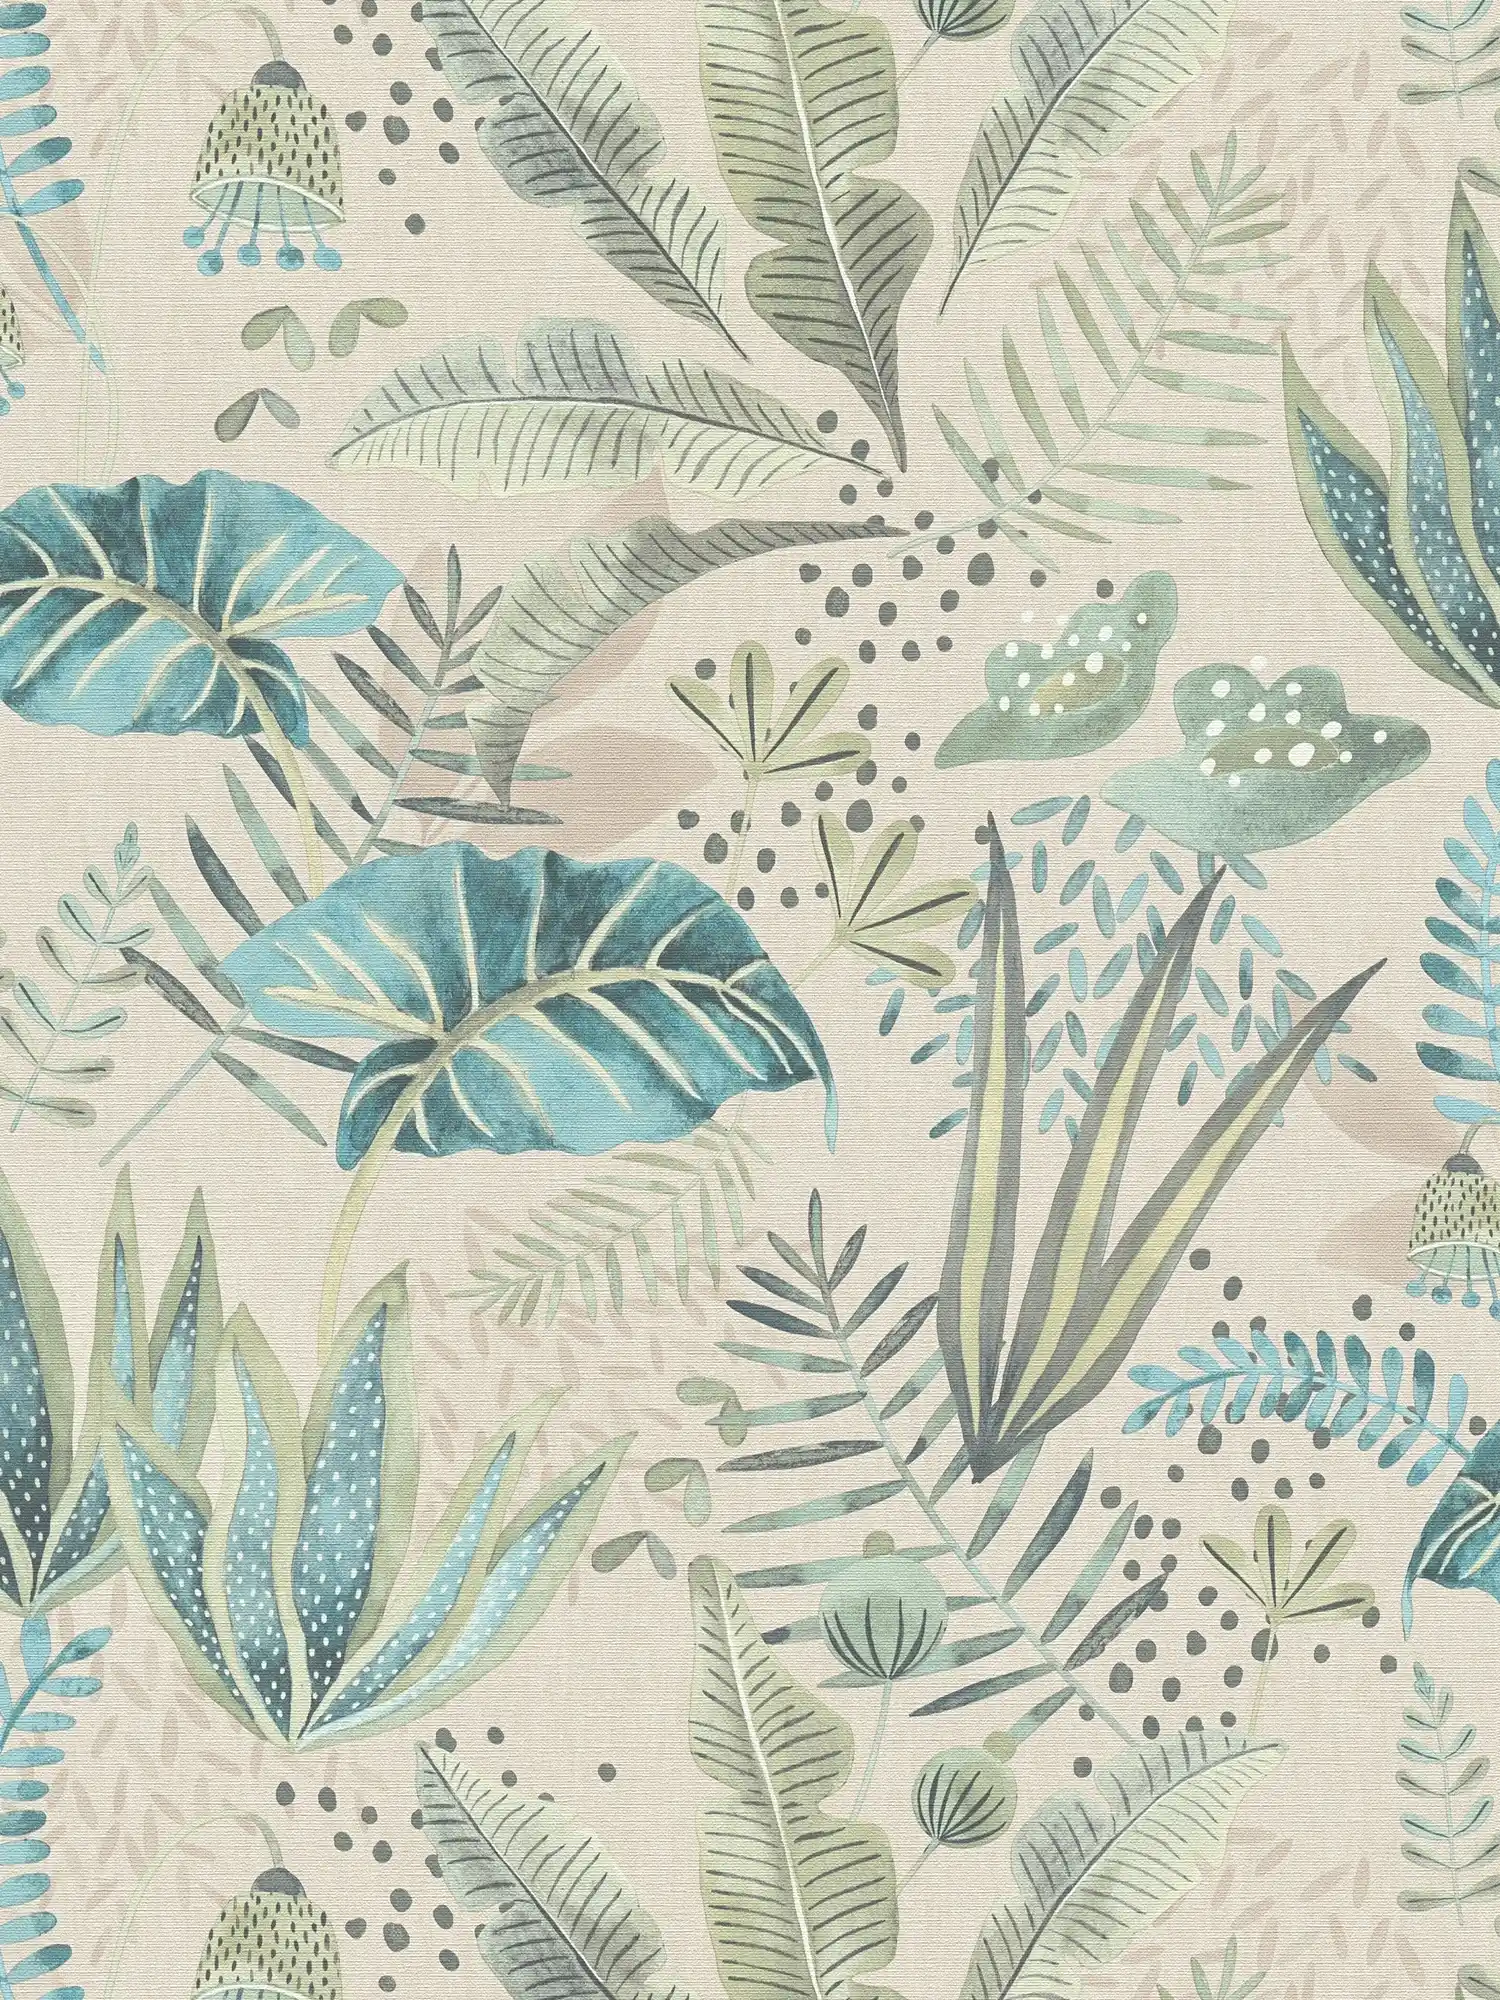         wallpaper floral with mixed leaves light textured, matt - beige, green, blue
    